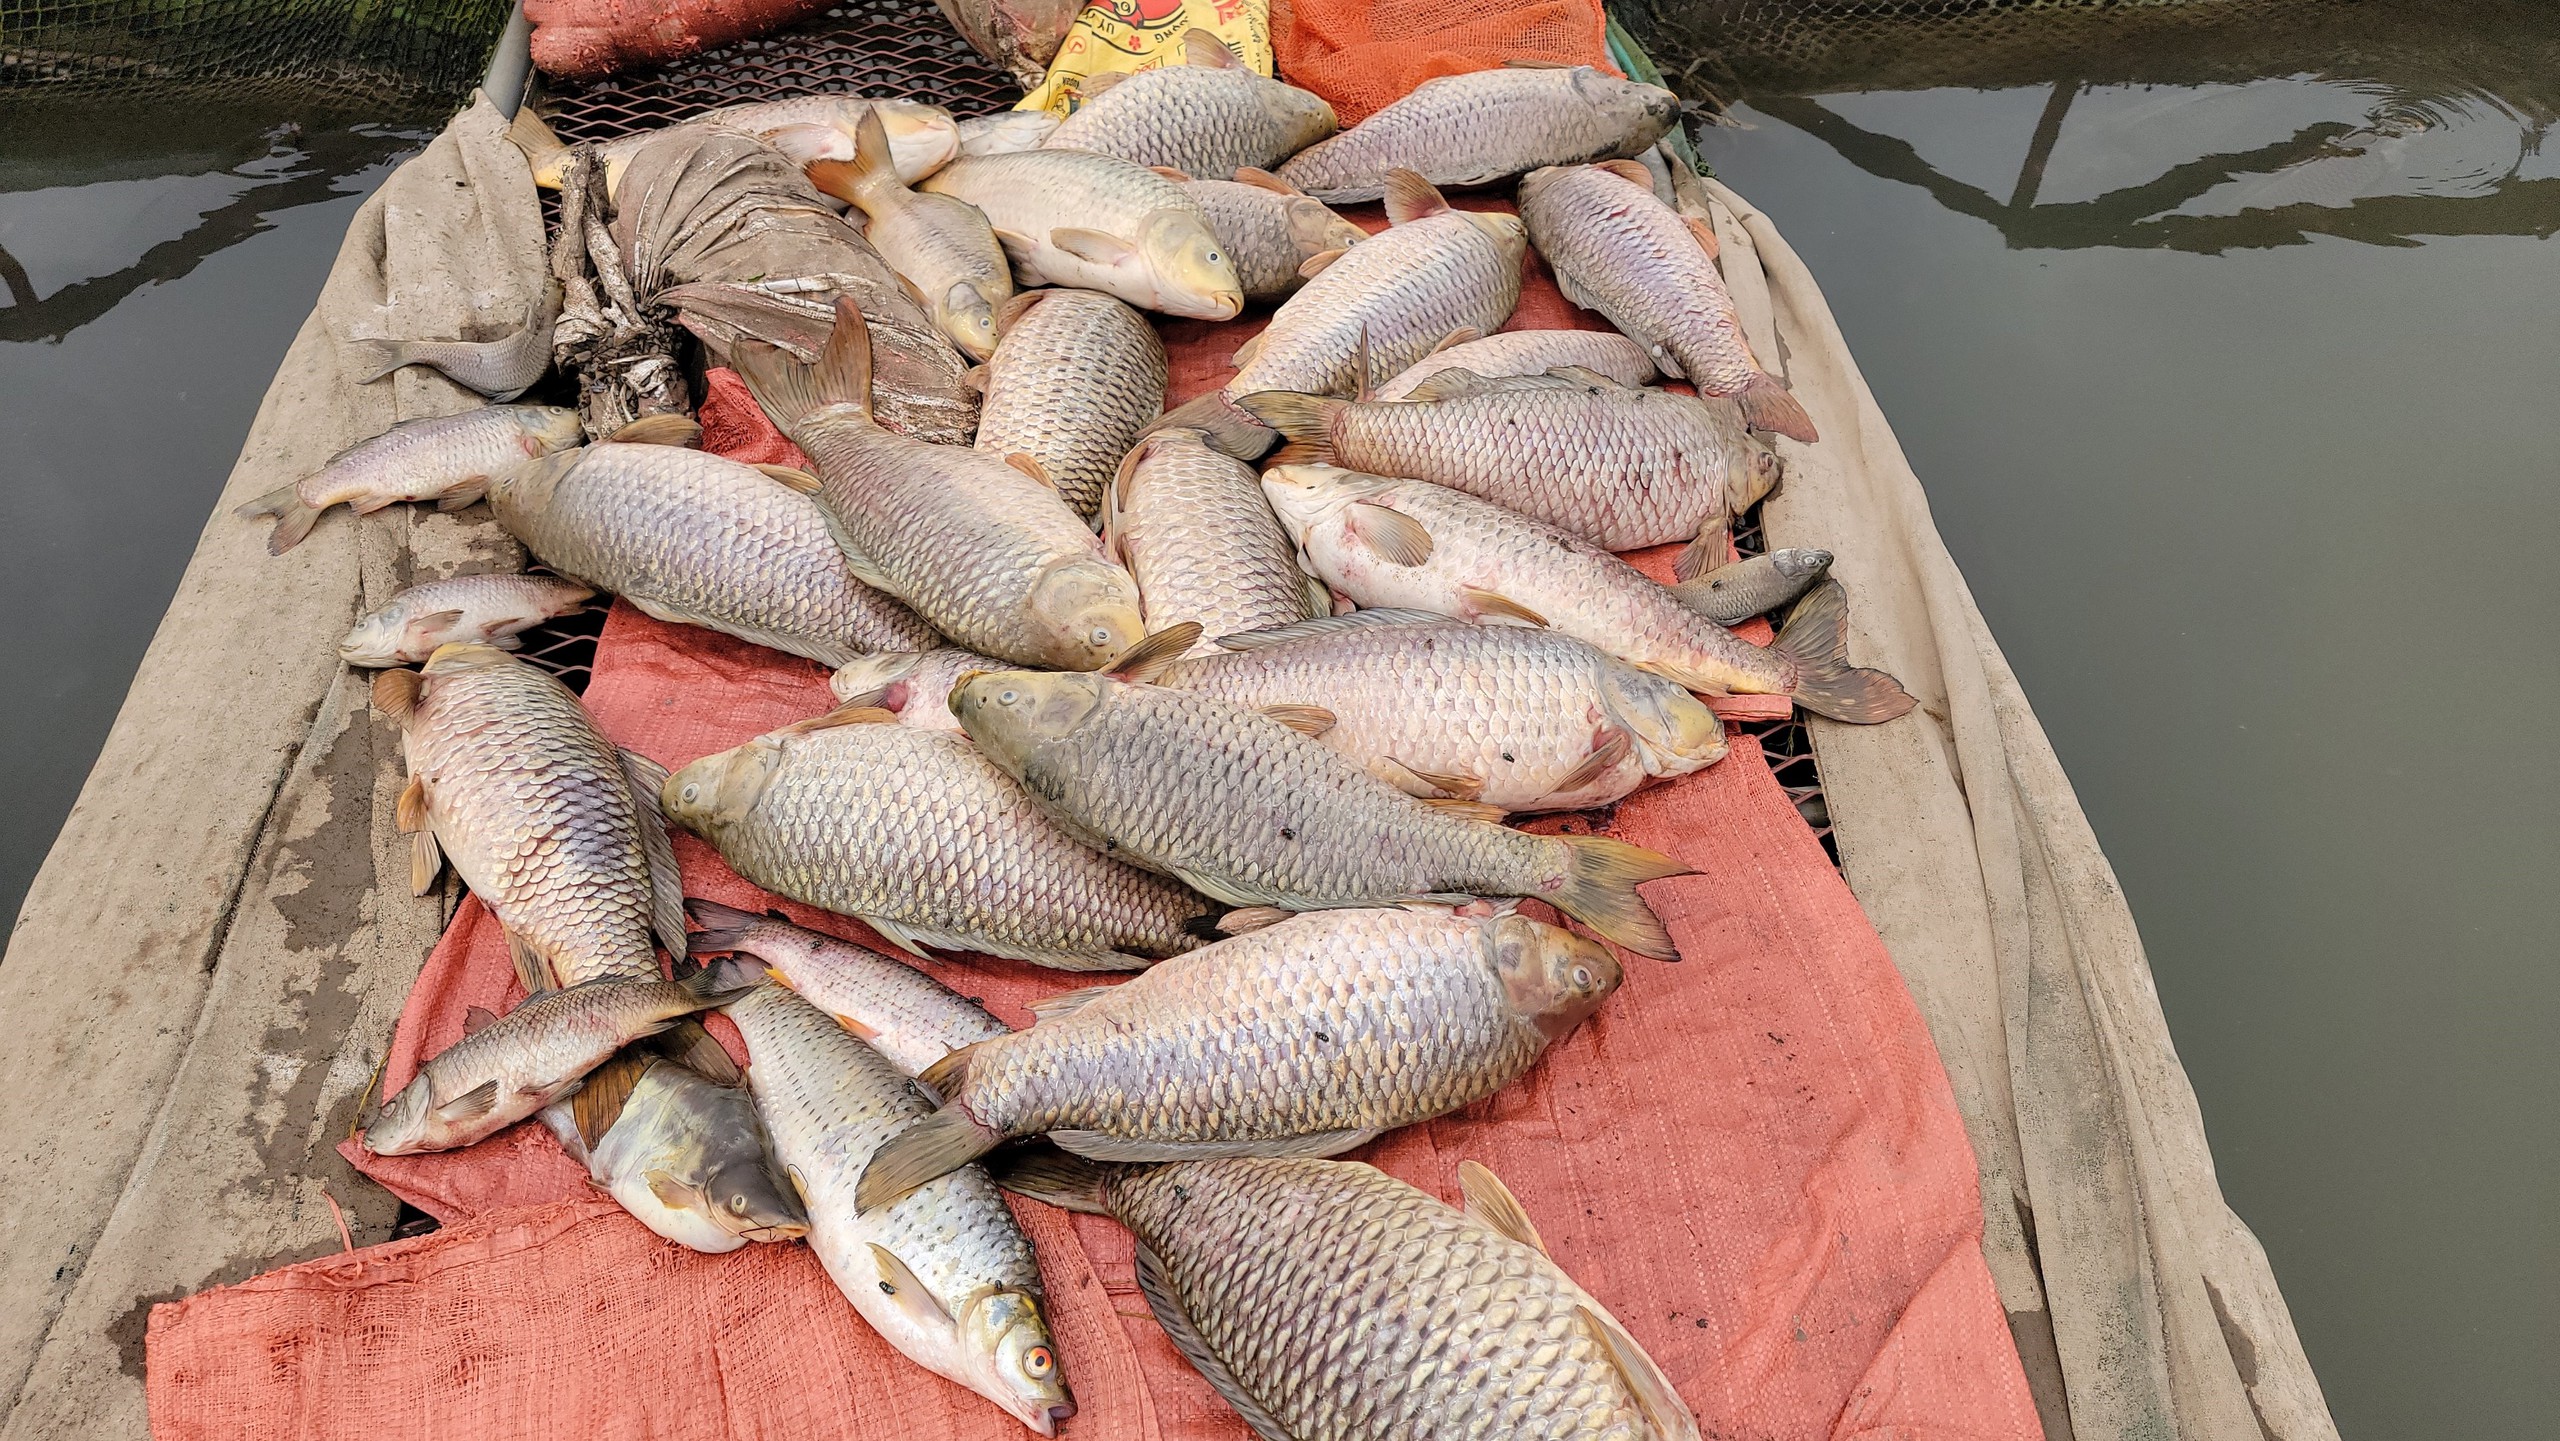 Trăm tấn cá chết bất thường trên sông Thái Bình ở TP Hải Dương, dân buồn hụt hẫng, có nhà "trôi tiền tỷ"- Ảnh 4.